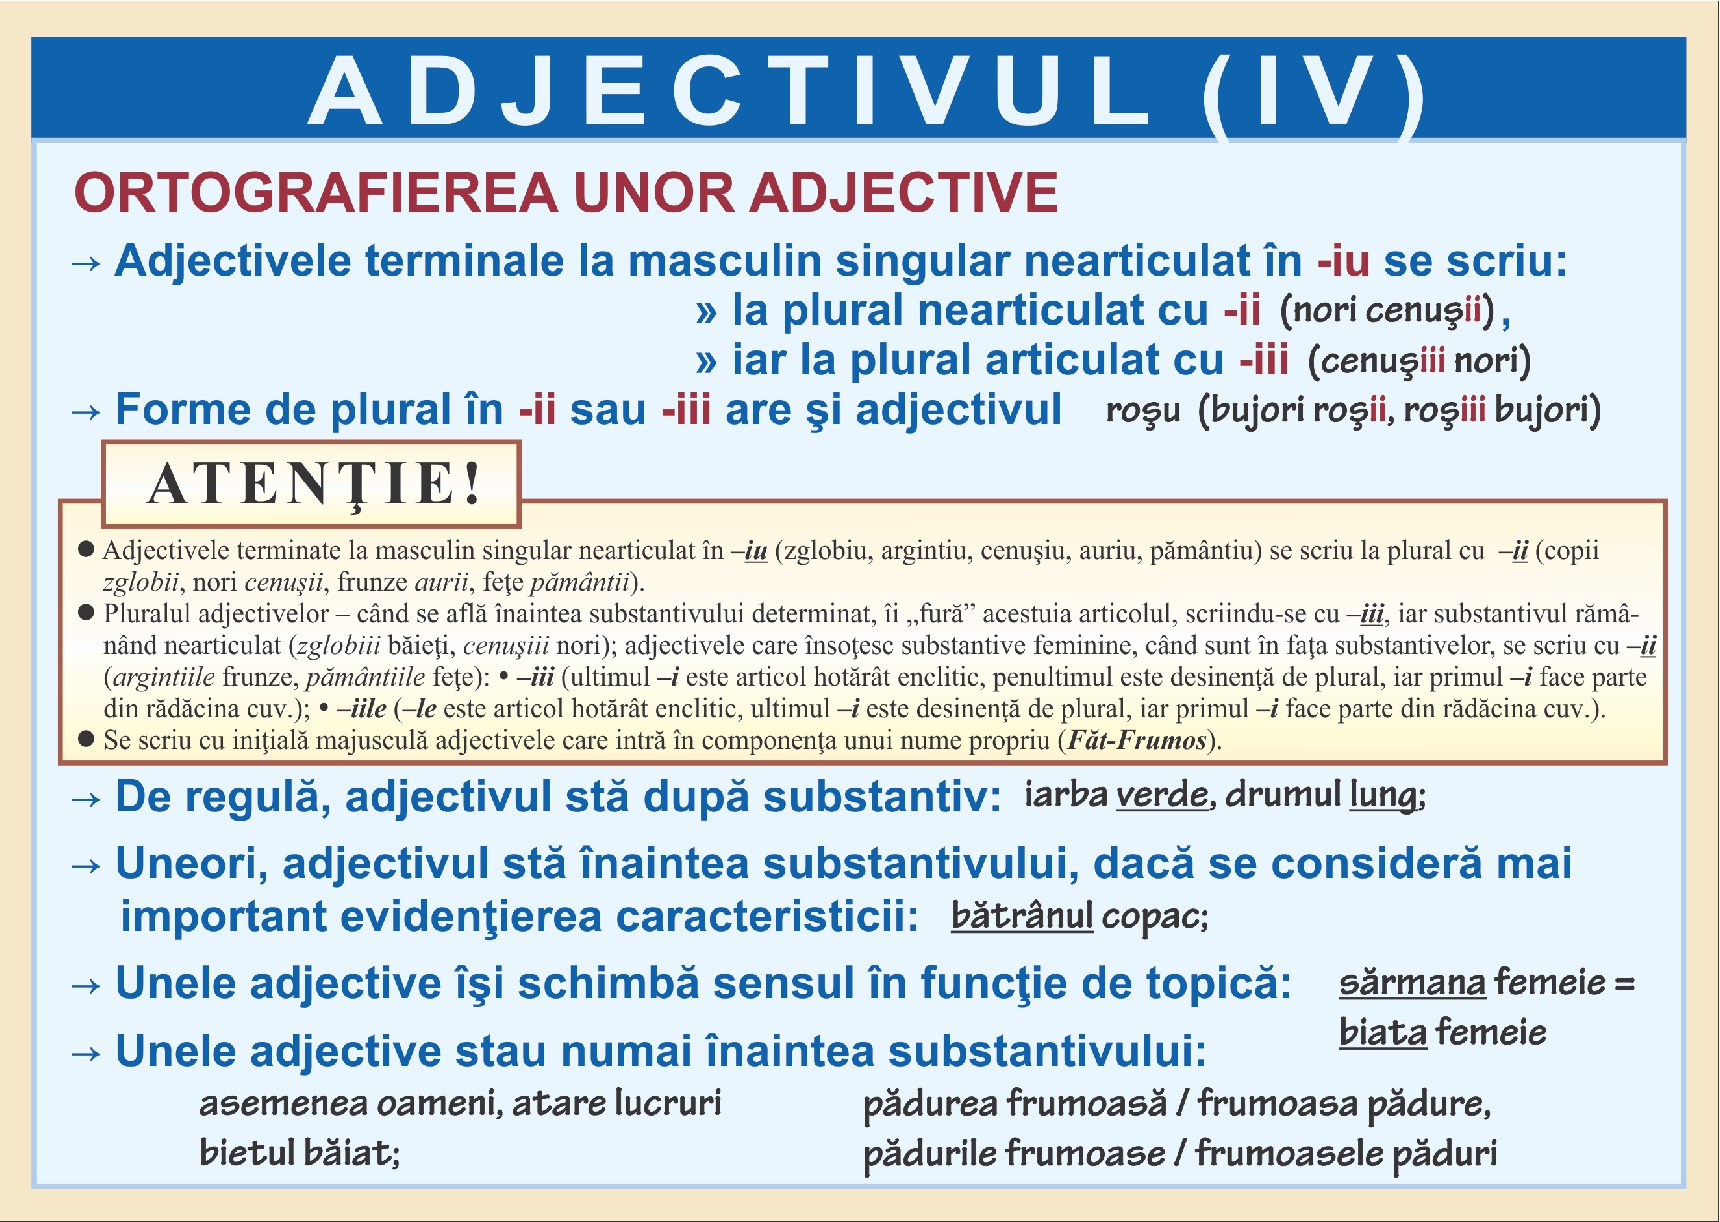 Adjectivul - IV